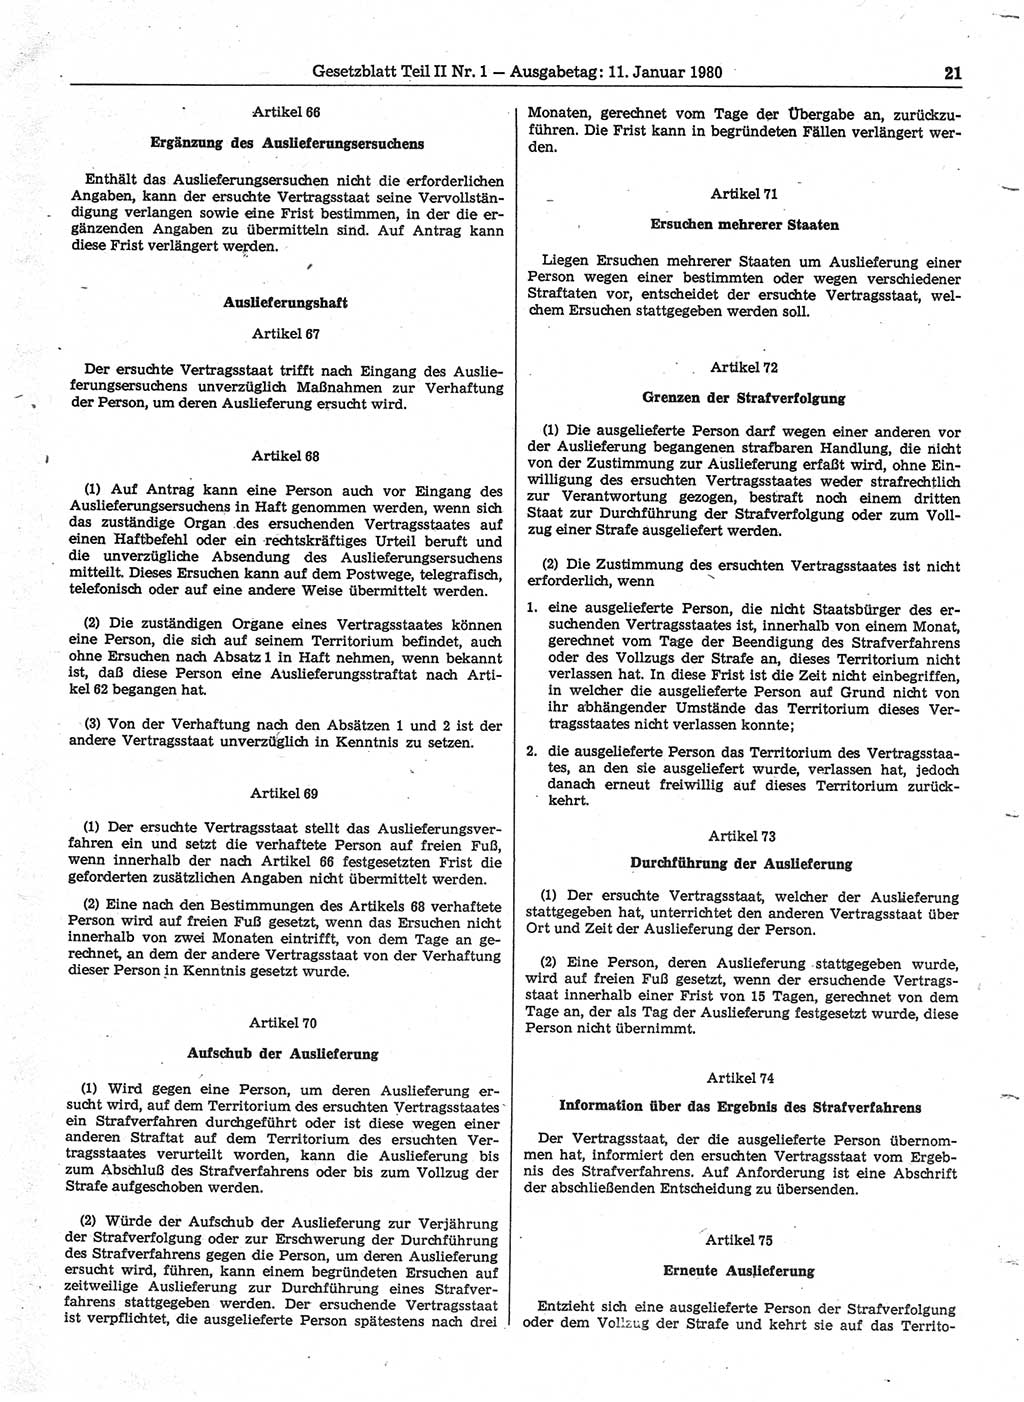 Gesetzblatt (GBl.) der Deutschen Demokratischen Republik (DDR) Teil ⅠⅠ 1980, Seite 21 (GBl. DDR ⅠⅠ 1980, S. 21)